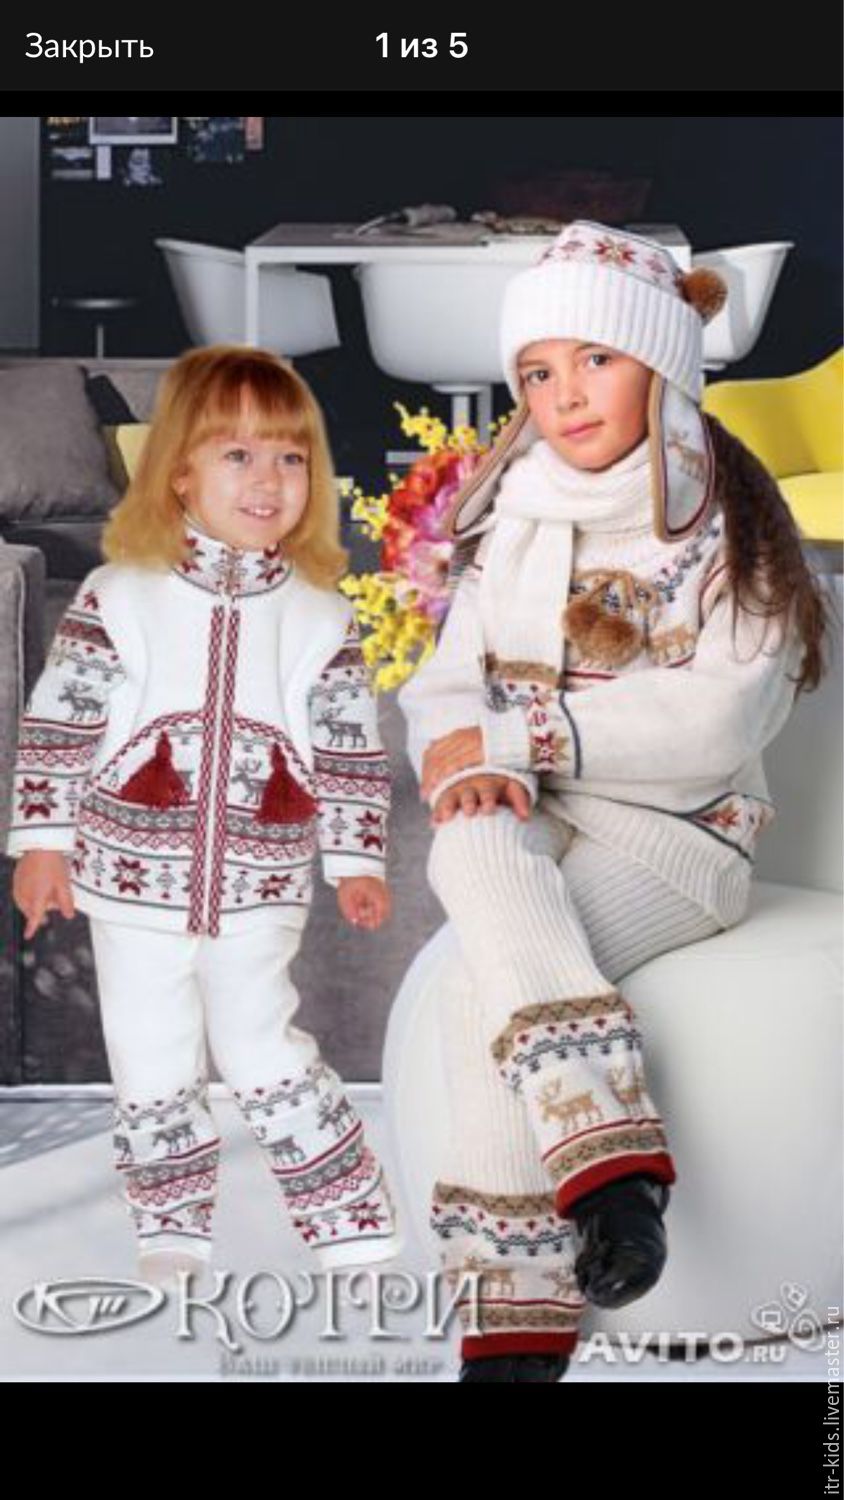 Детская одежда в скандинавском стиле